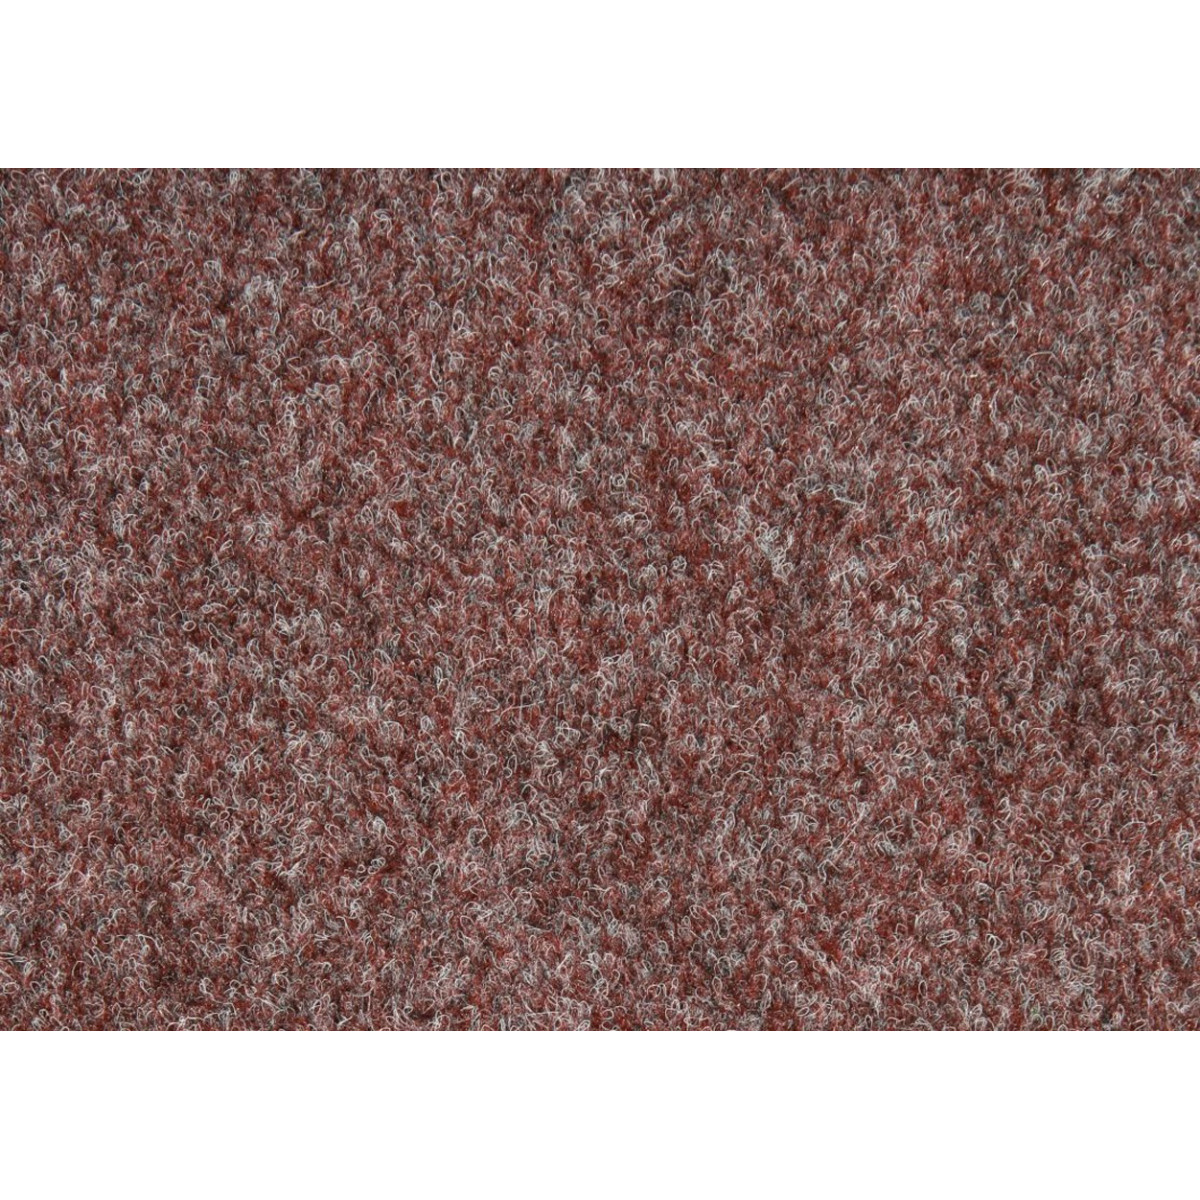 AKCE: 100x280 cm Metrážový koberec New Orleans 372 s podkladem resine, zátěžový